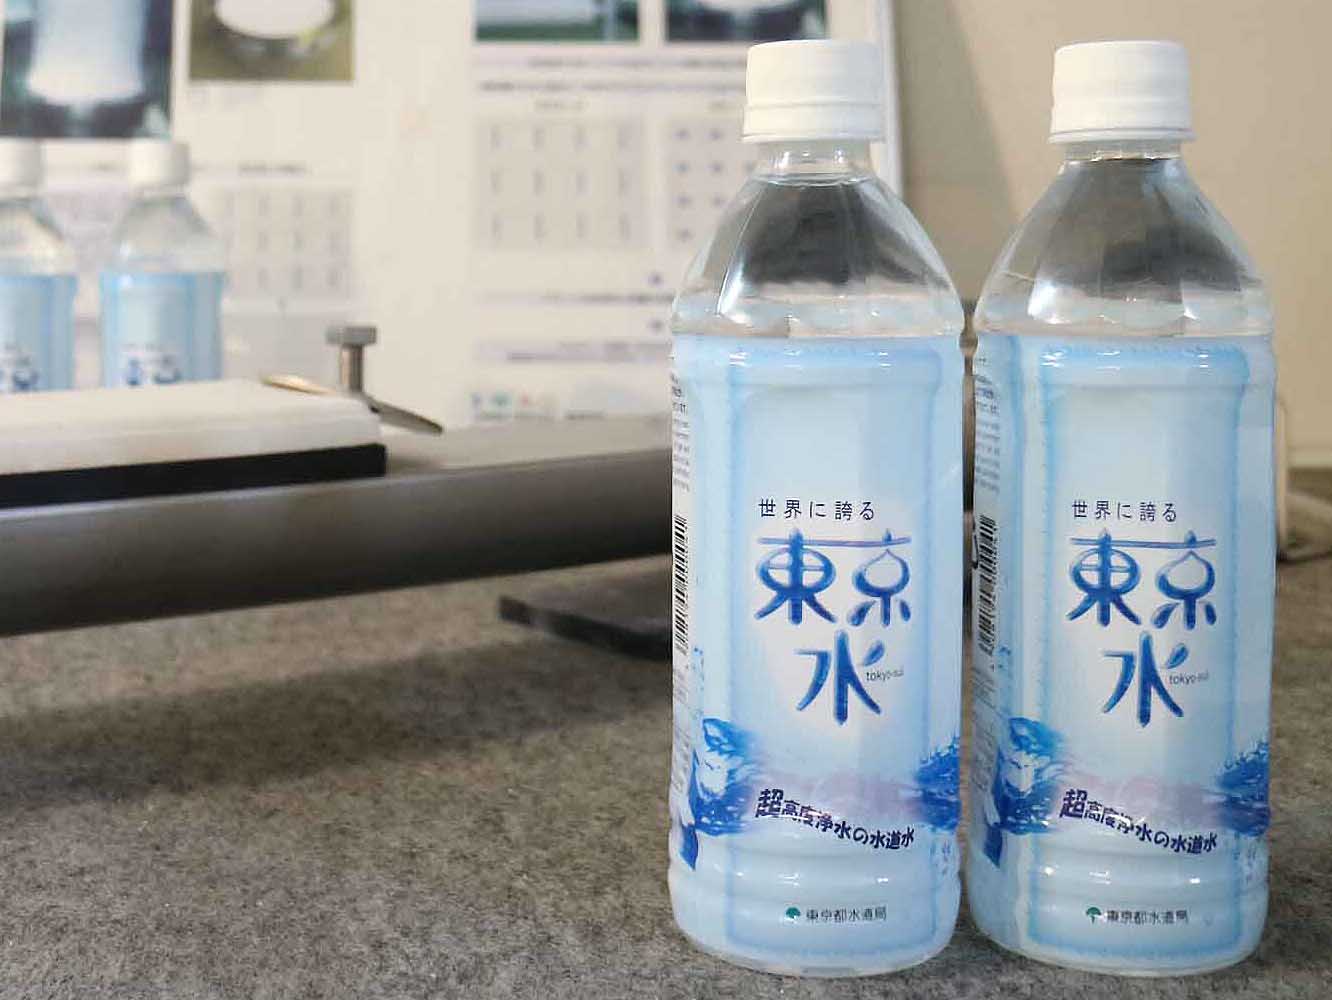 東京都が売り出して話題となったペットボトル入り水道水。美味しさへの自信が表れた商品です